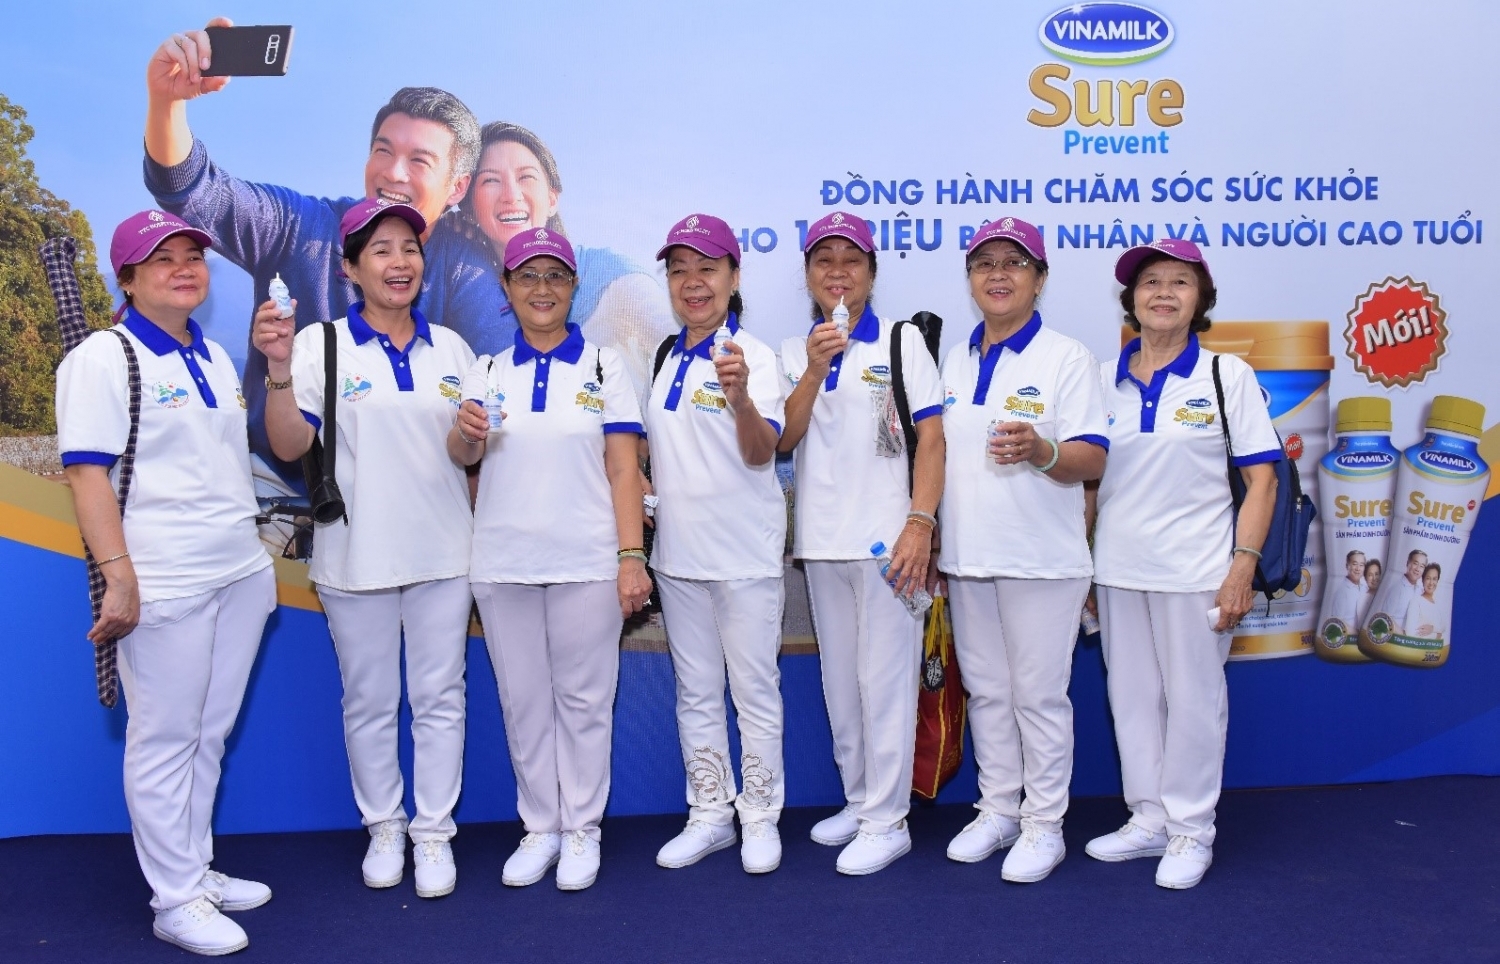 Vinamilk Sure Prevent phối hợp tổ chức Giải thi đấu thể dục dưỡng sinh TP Hồ Chí Minh mở rộng năm 2018